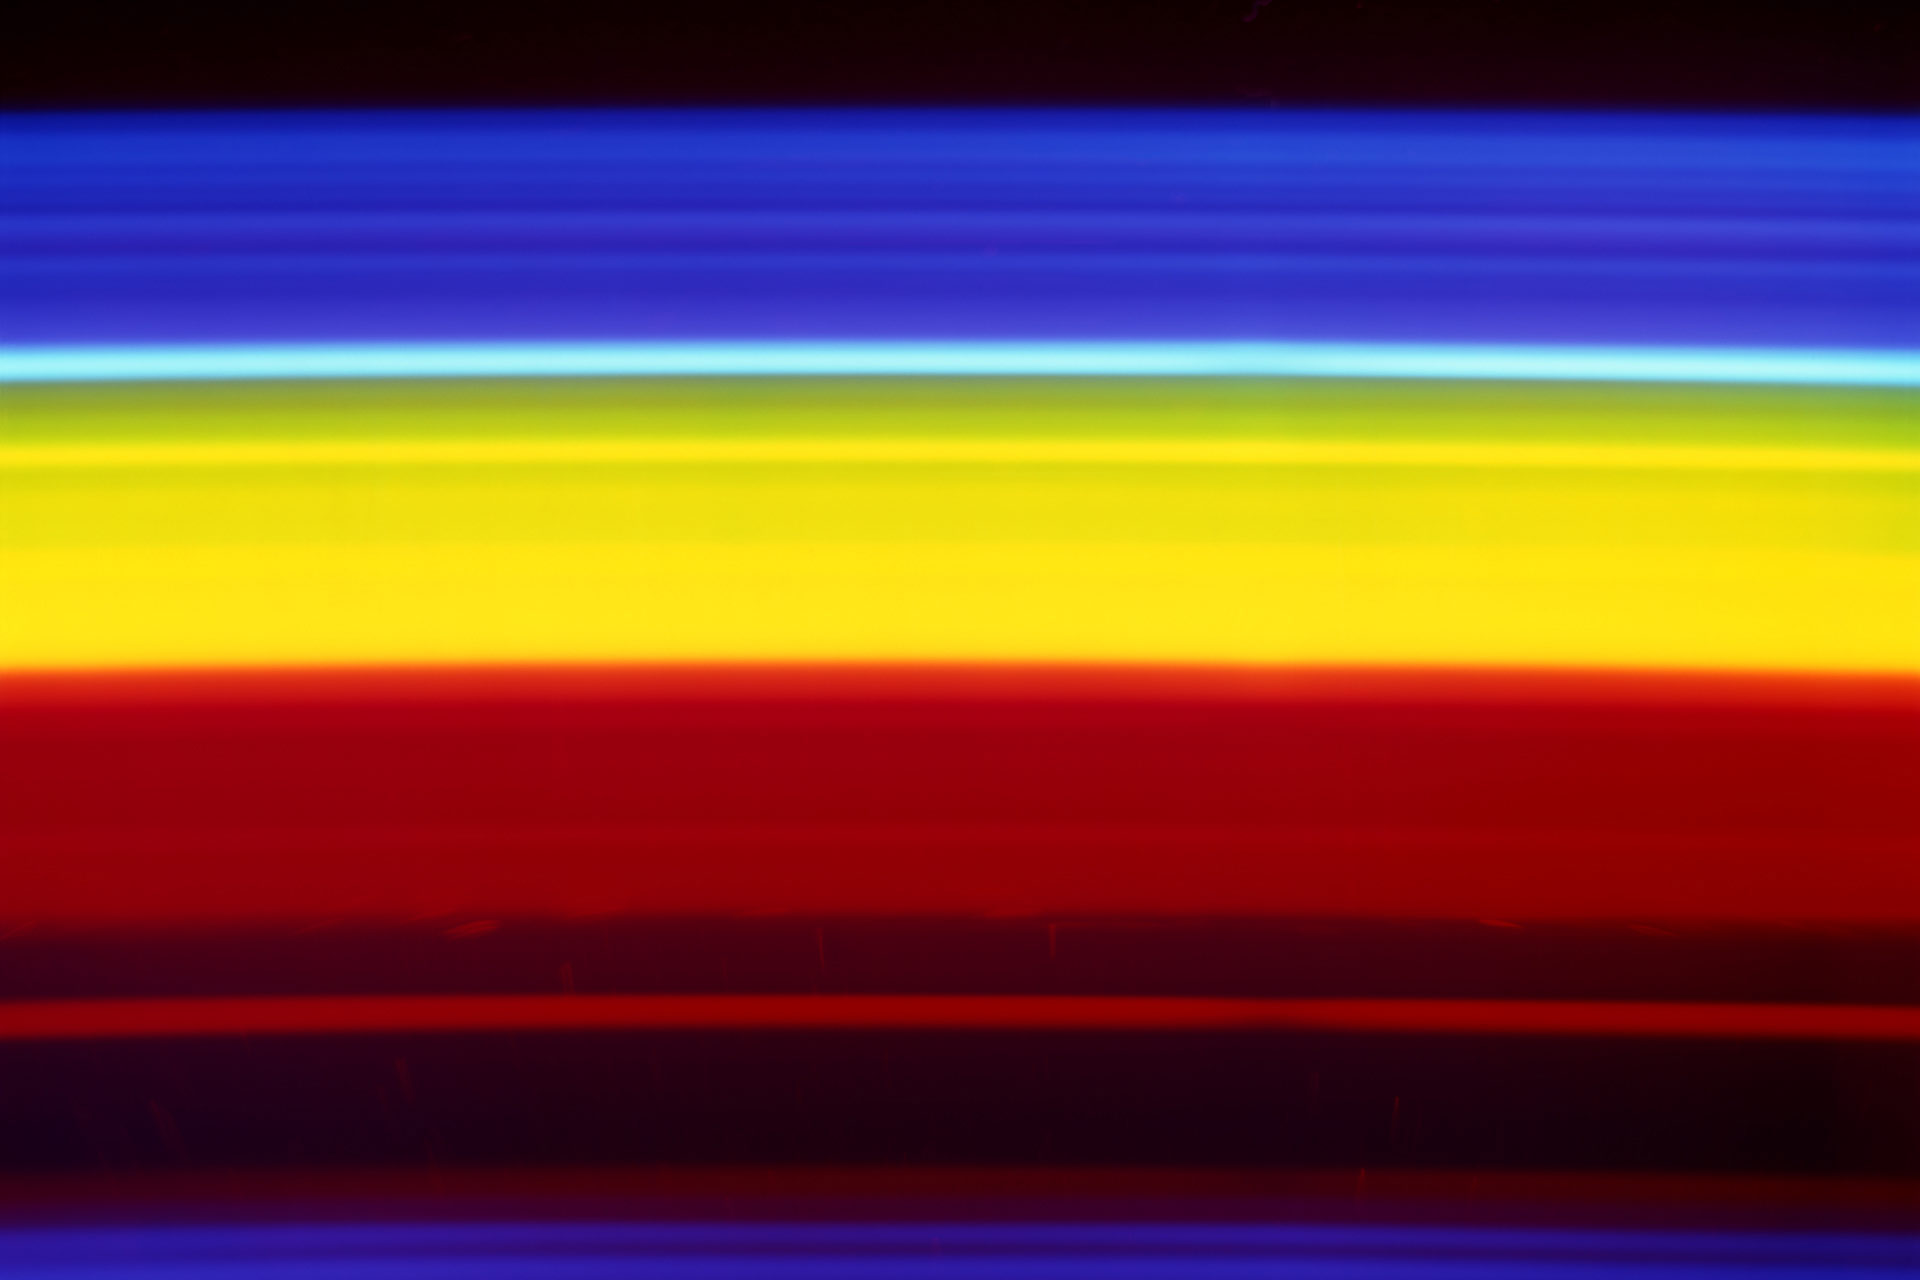 Emission Spectrum of Carbon Dioxide #2, 2011